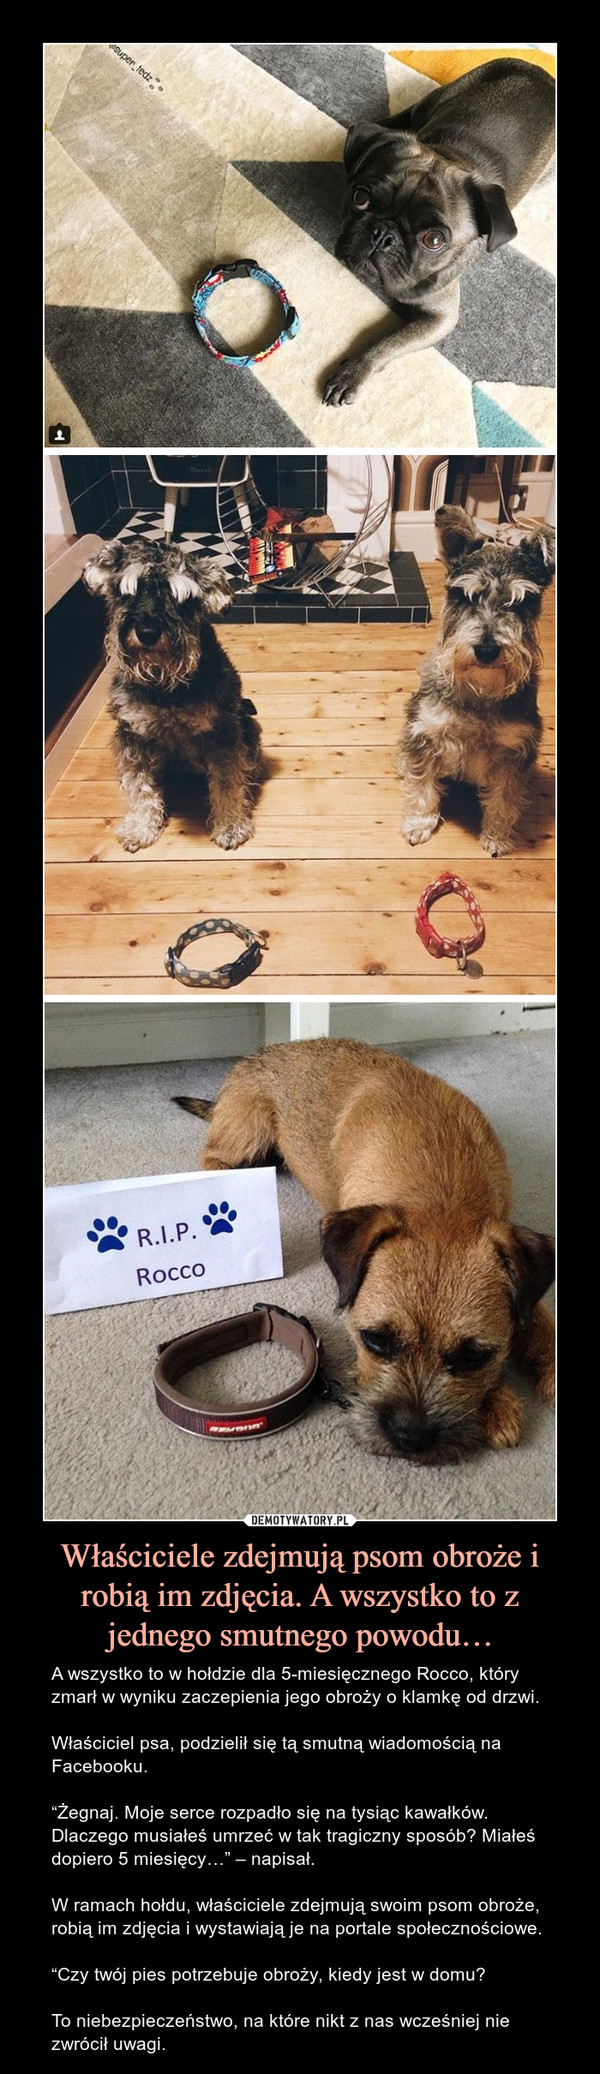 Właściciele zdejmują psom obroże i robią im zdjęcia. A wszystko to z jednego smutnego powodu… – A wszystko to w hołdzie dla 5-miesięcznego Rocco, który zmarł w wyniku zaczepienia jego obroży o klamkę od drzwi.Właściciel psa, podzielił się tą smutną wiadomością na Facebooku.“Żegnaj. Moje serce rozpadło się na tysiąc kawałków. Dlaczego musiałeś umrzeć w tak tragiczny sposób? Miałeś dopiero 5 miesięcy…” – napisał.W ramach hołdu, właściciele zdejmują swoim psom obroże, robią im zdjęcia i wystawiają je na portale społecznościowe.“Czy twój pies potrzebuje obroży, kiedy jest w domu?To niebezpieczeństwo, na które nikt z nas wcześniej nie zwrócił uwagi. 